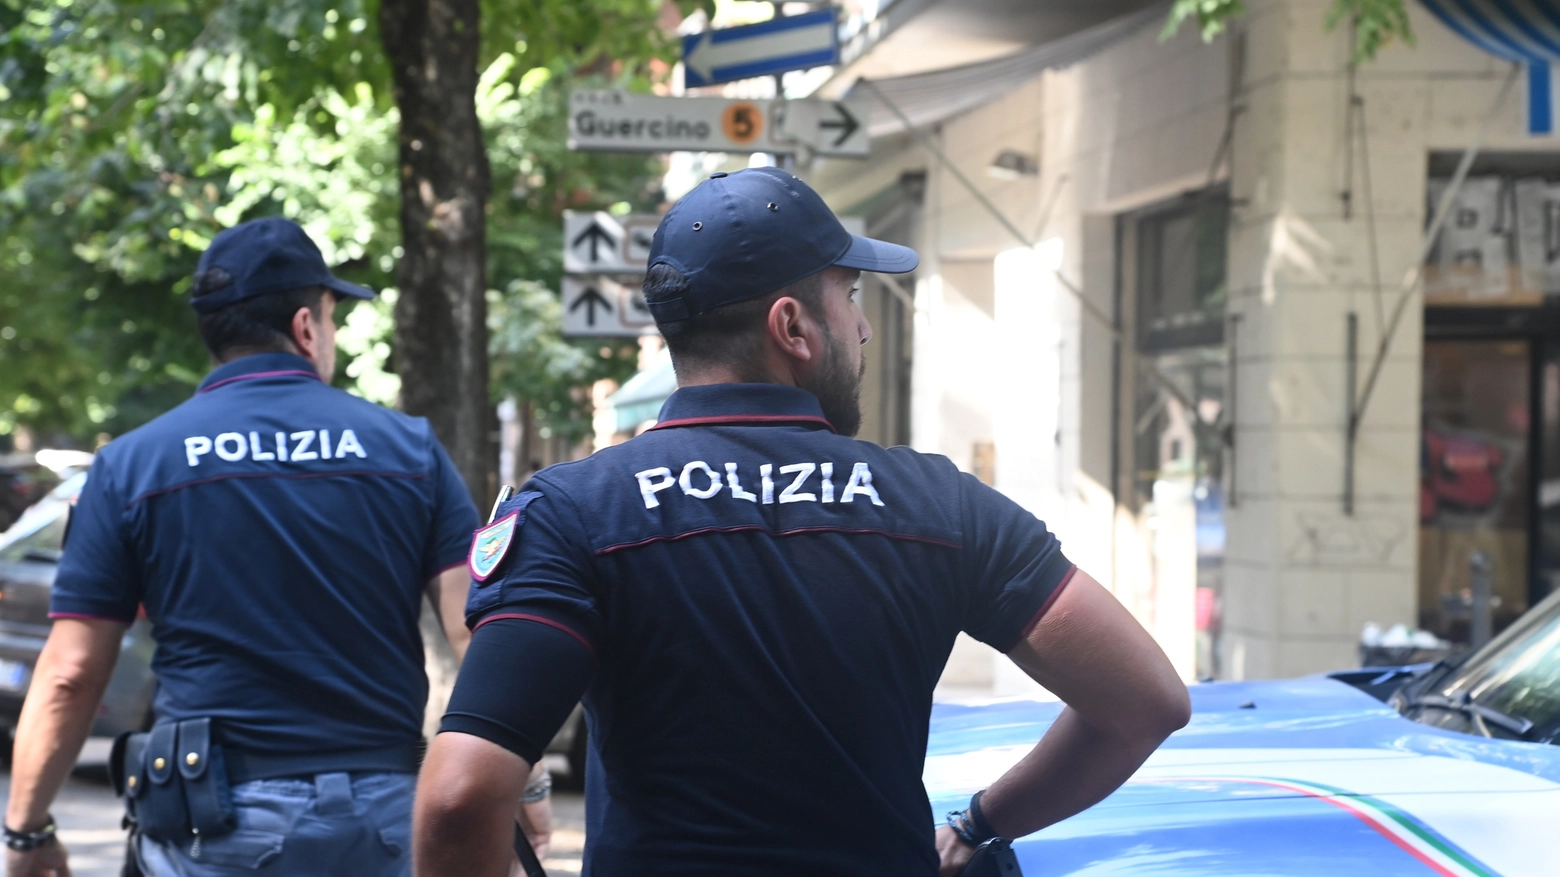 Operazione antidroga della polizia di Bologna e Modena: lo stupefacente era sul sedile posteriore di una delle due vetture fermate. Su una terza auto, in un sottofondo, trovati altri 9 chili divisi in panetti